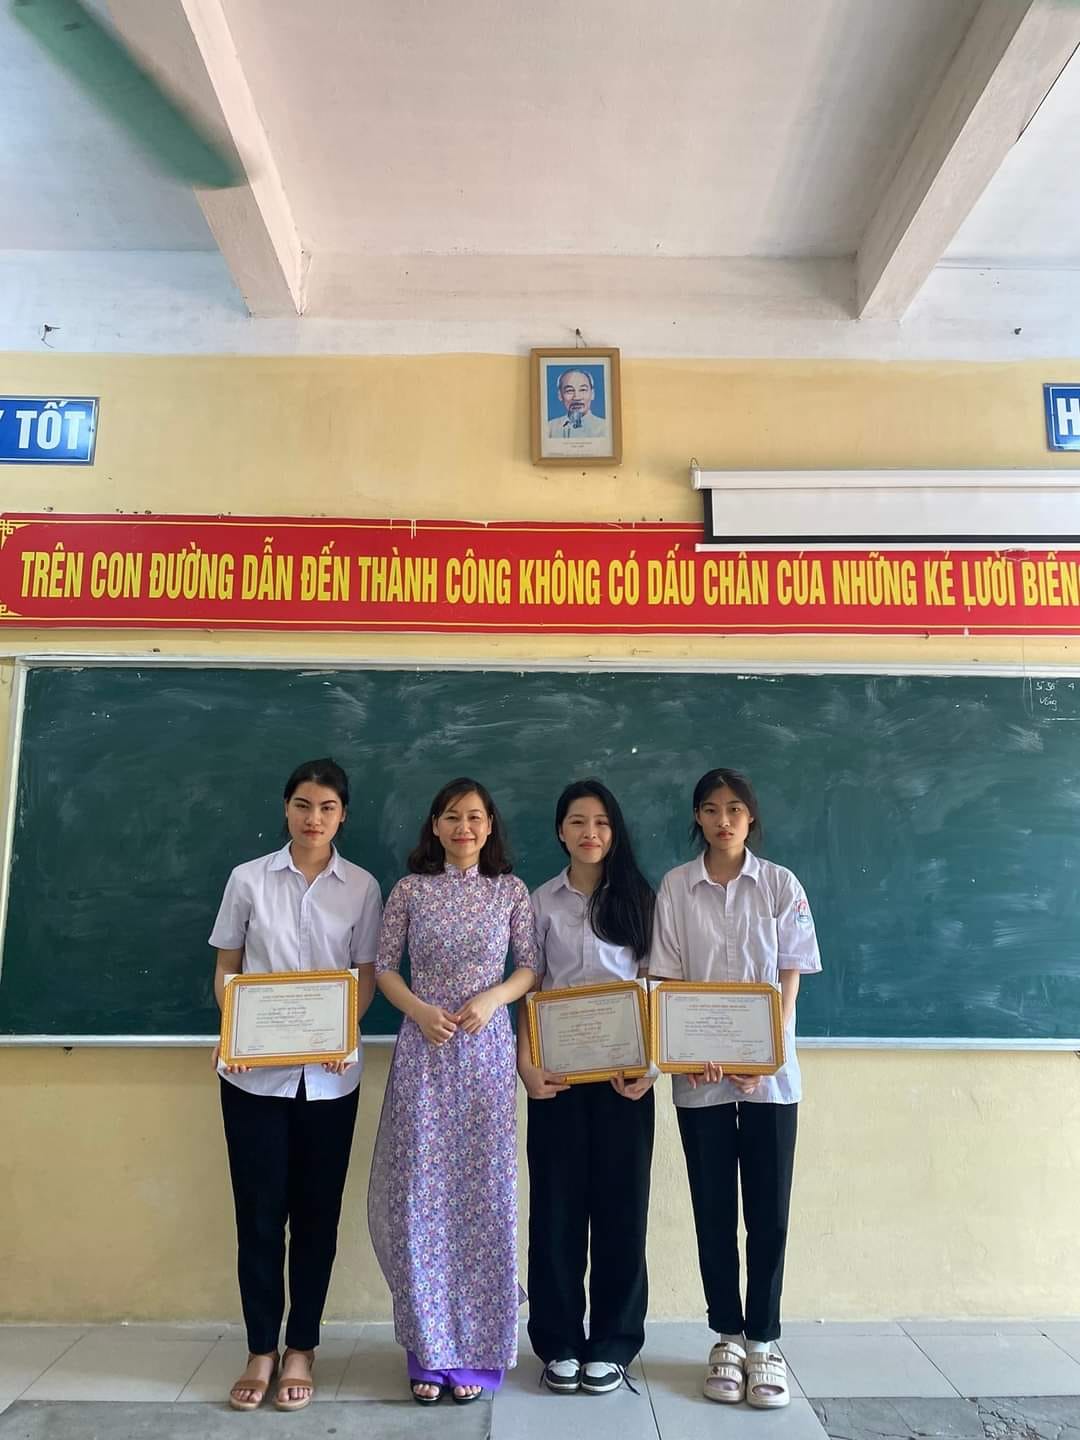 Hình ảnh Đan Thanh nhận bằng khen cùng các bạn trong lớp được trường THPT Nghĩa Minh đăng tải